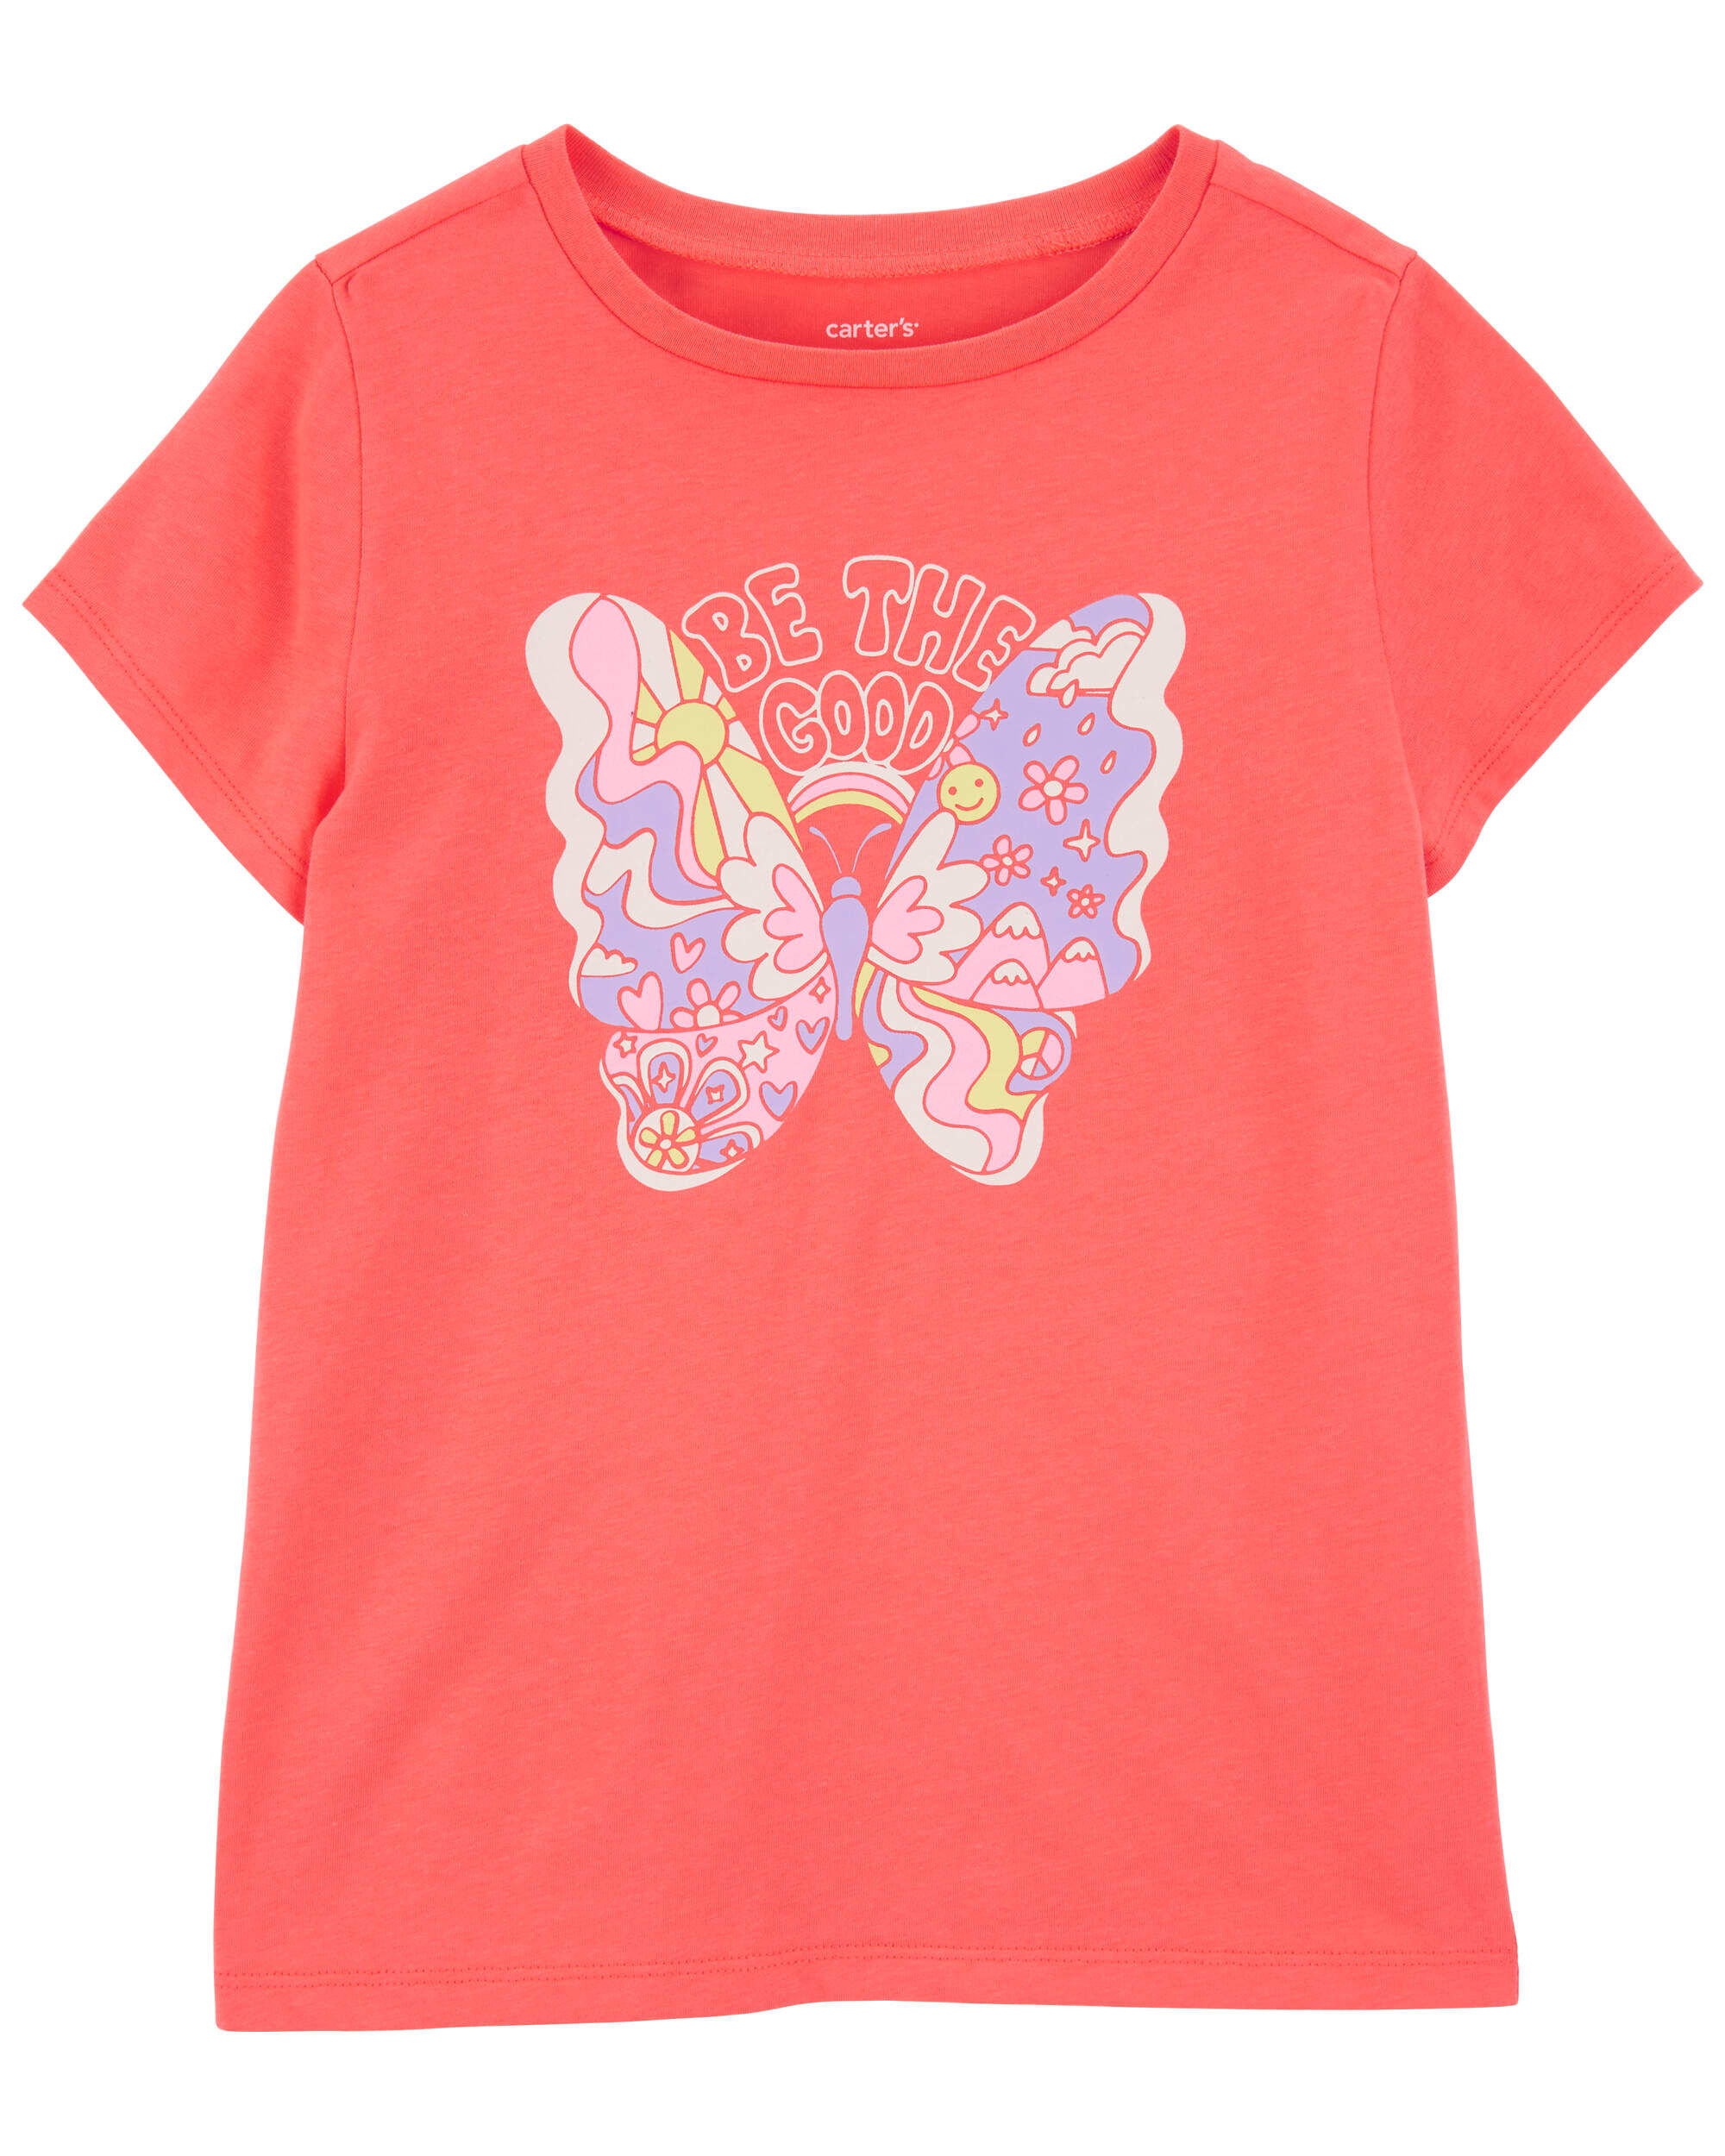 Детская футболка с рисунком бабочки Carter's